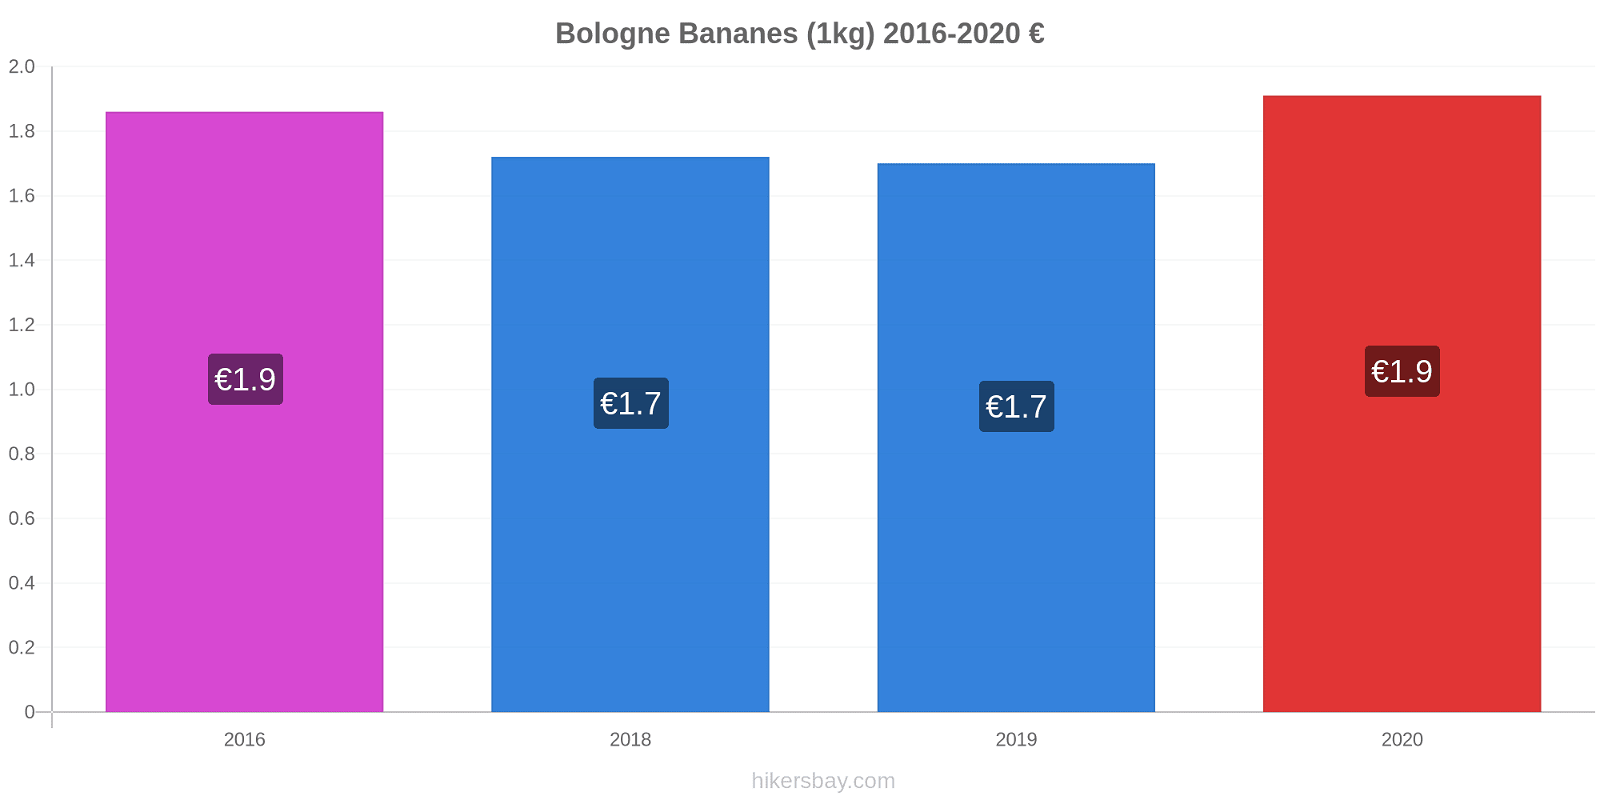 Bologne changements de prix Bananes (1kg) hikersbay.com